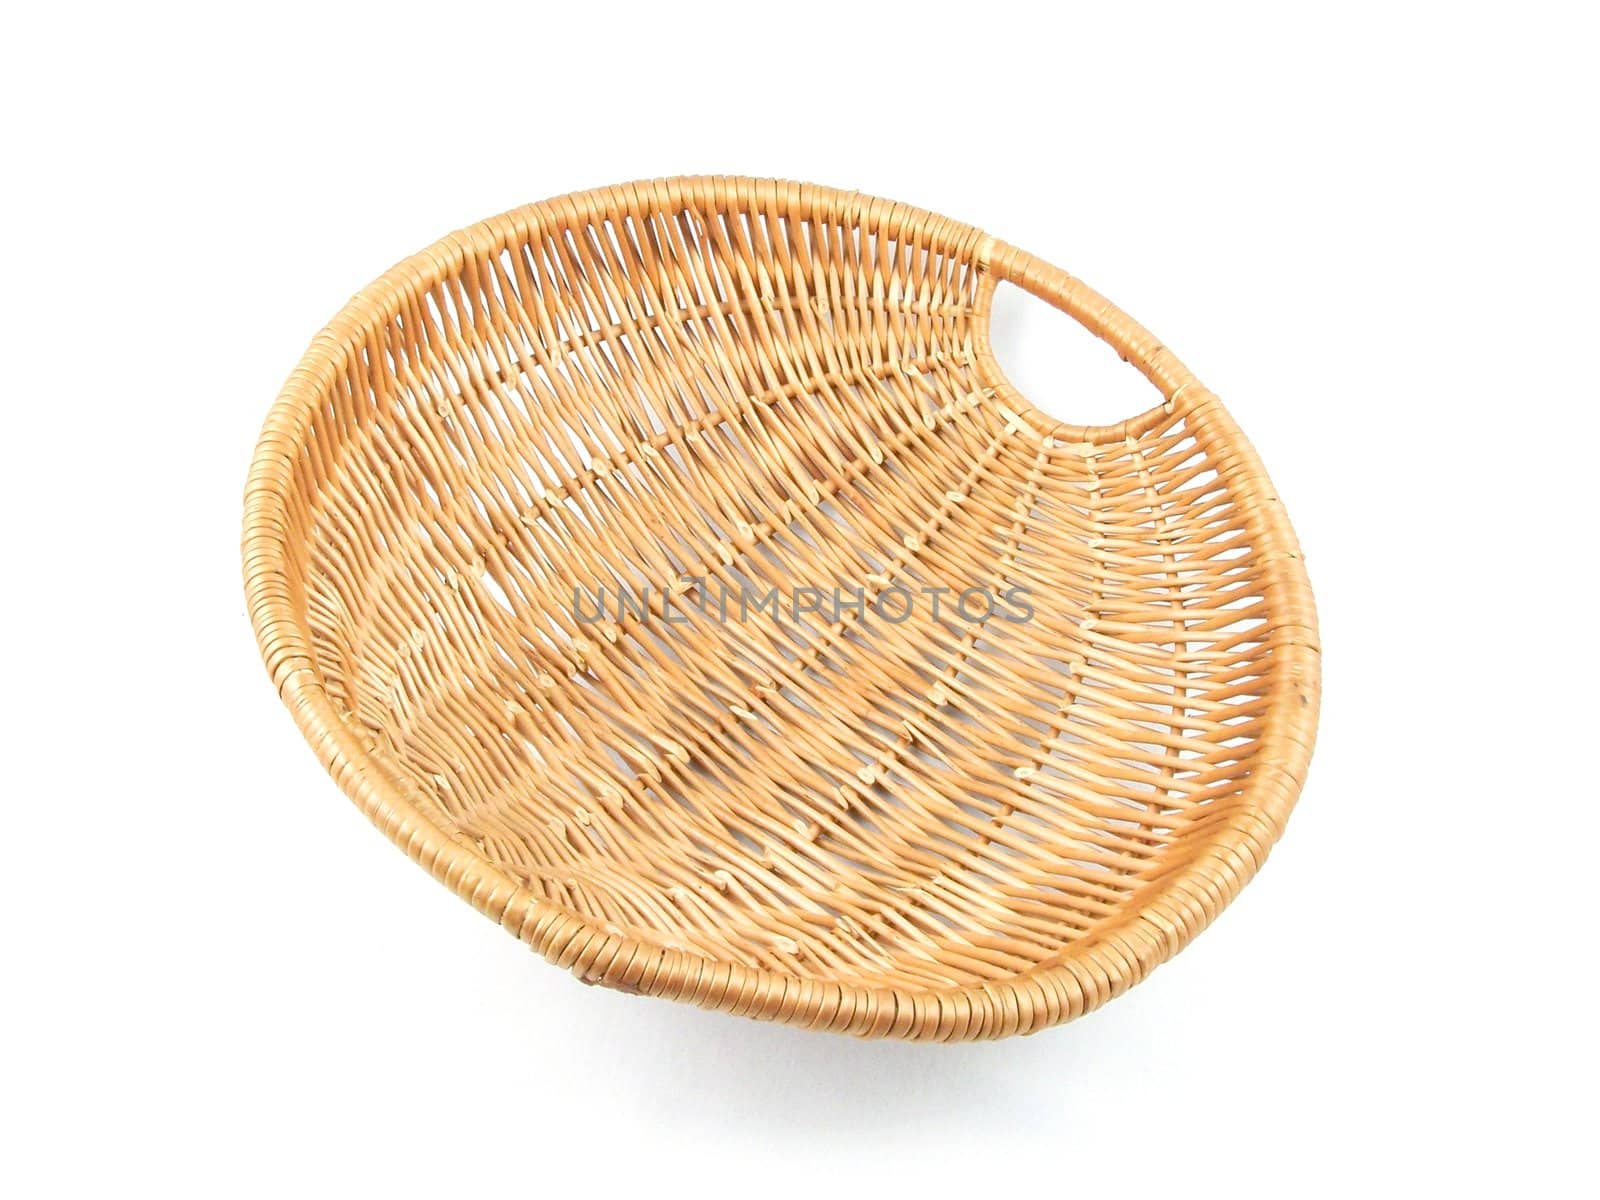 wicker basket by alexwhite